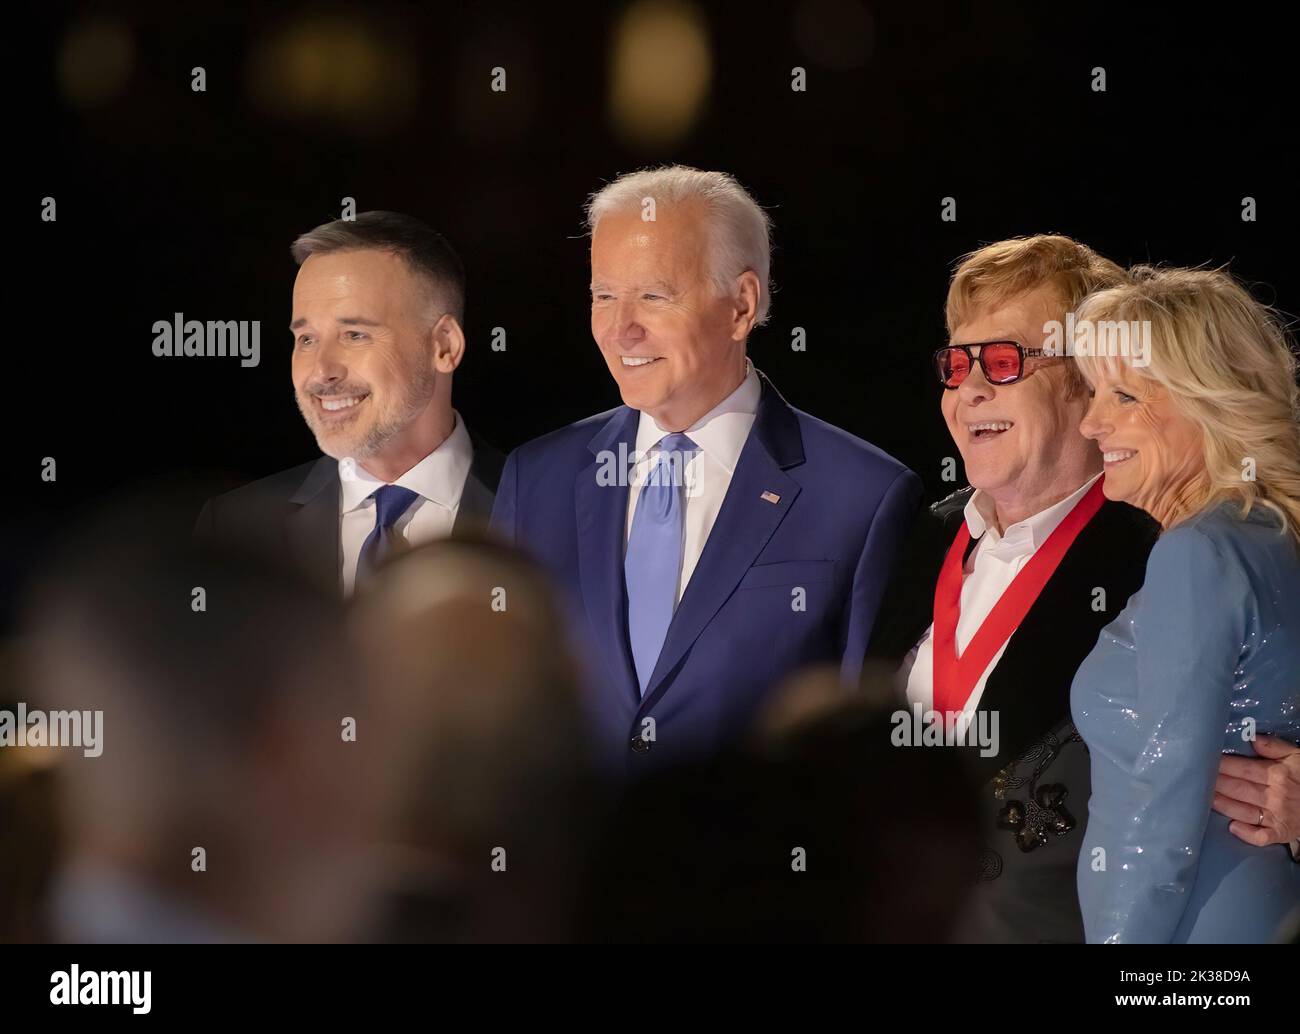 El Presidente DE LOS ESTADOS UNIDOS Joe Biden y la Primera Dama Jill Biden dieron la bienvenida a Elton John y a su socio David Furnish a la Casa Blanca para recibir la Medalla Nacional de Humanidades por su contribución a la música y el trabajo a través de @EJAF para acabar con el VIH/SIDA. Foto de la Casa Blanca Foto de stock